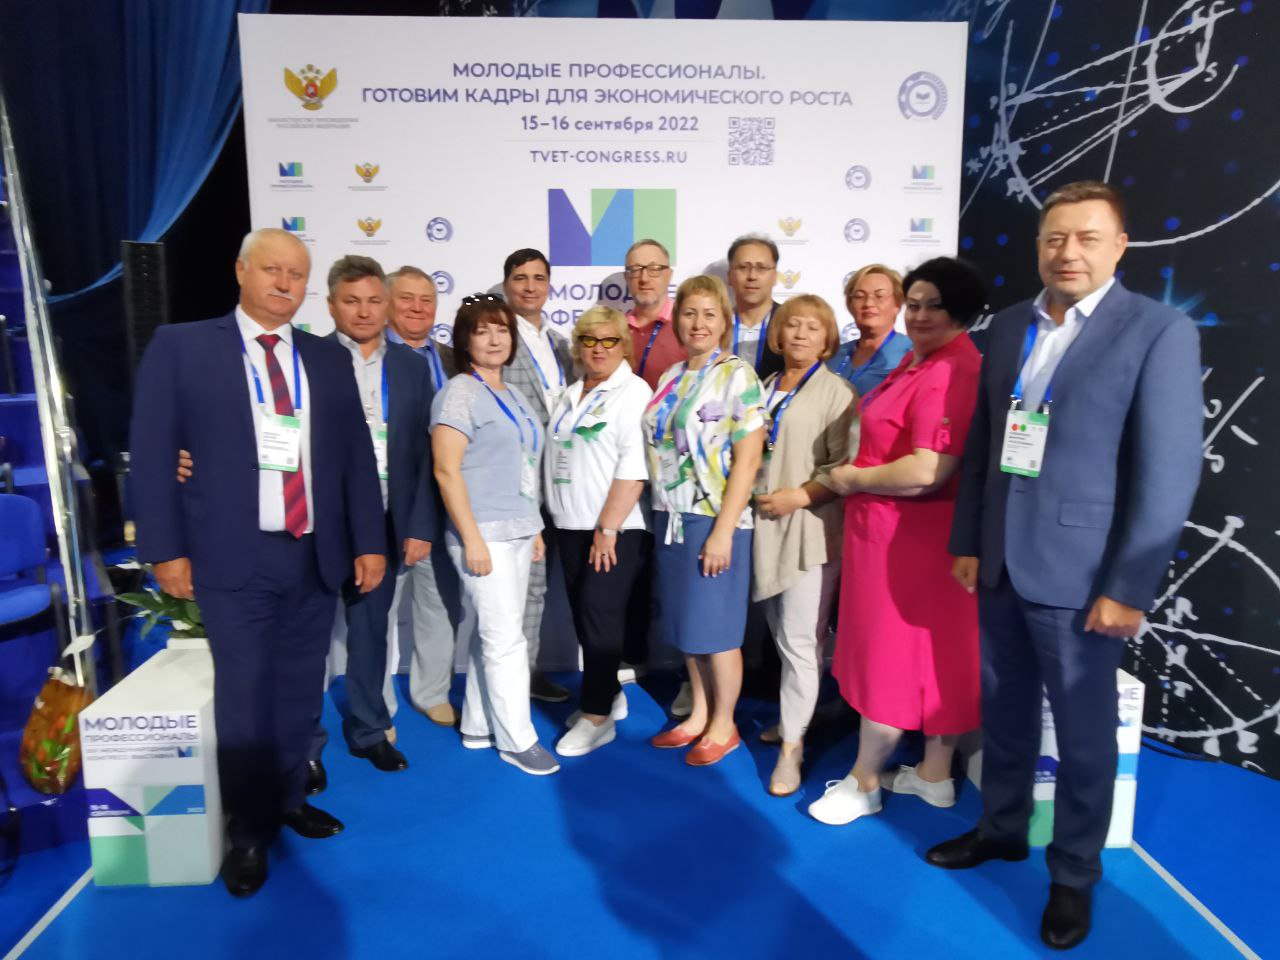 Руководители профессиональных образовательных организаций Кузбасса приняли участие в конгресс-выставке «Молодые профессионалы. Готовим кадры для экономического роста» 